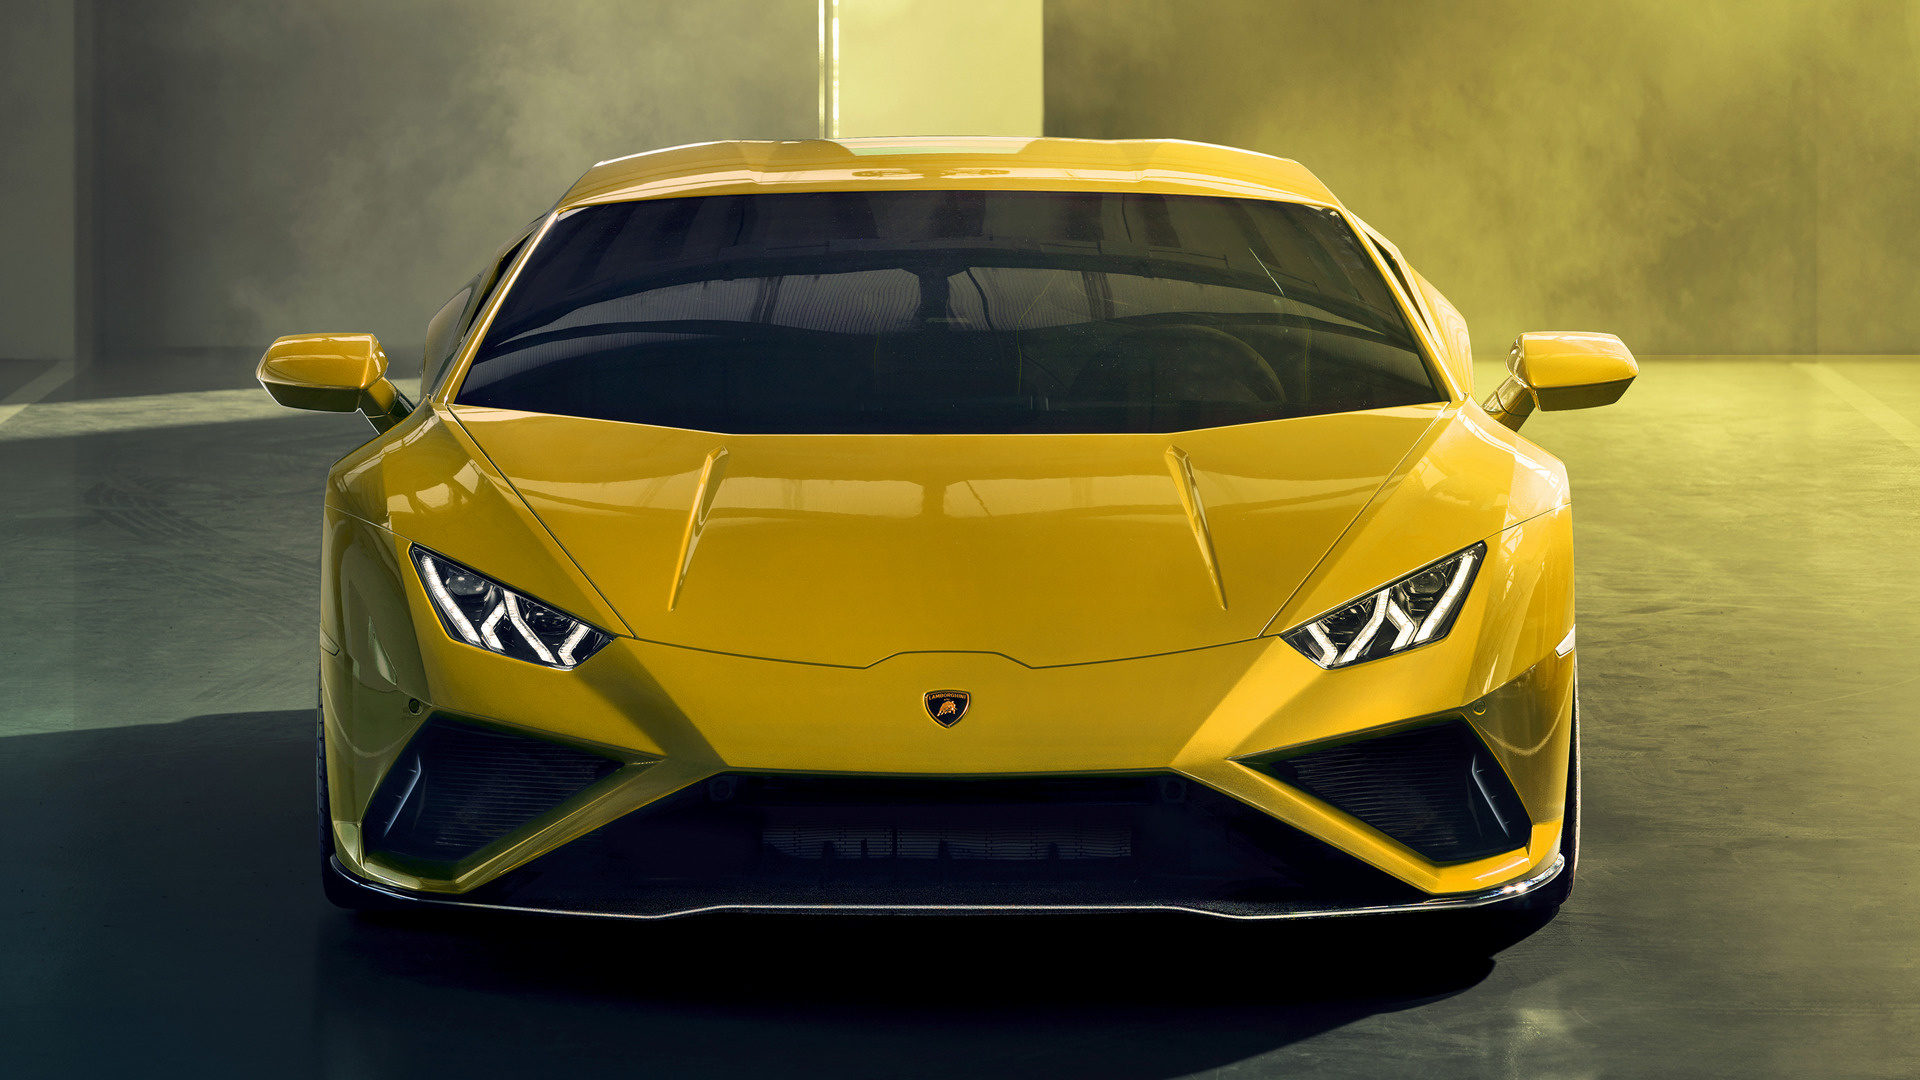 2020 Lamborghini Huracan Evo RWD - Wallpapers and HD ...